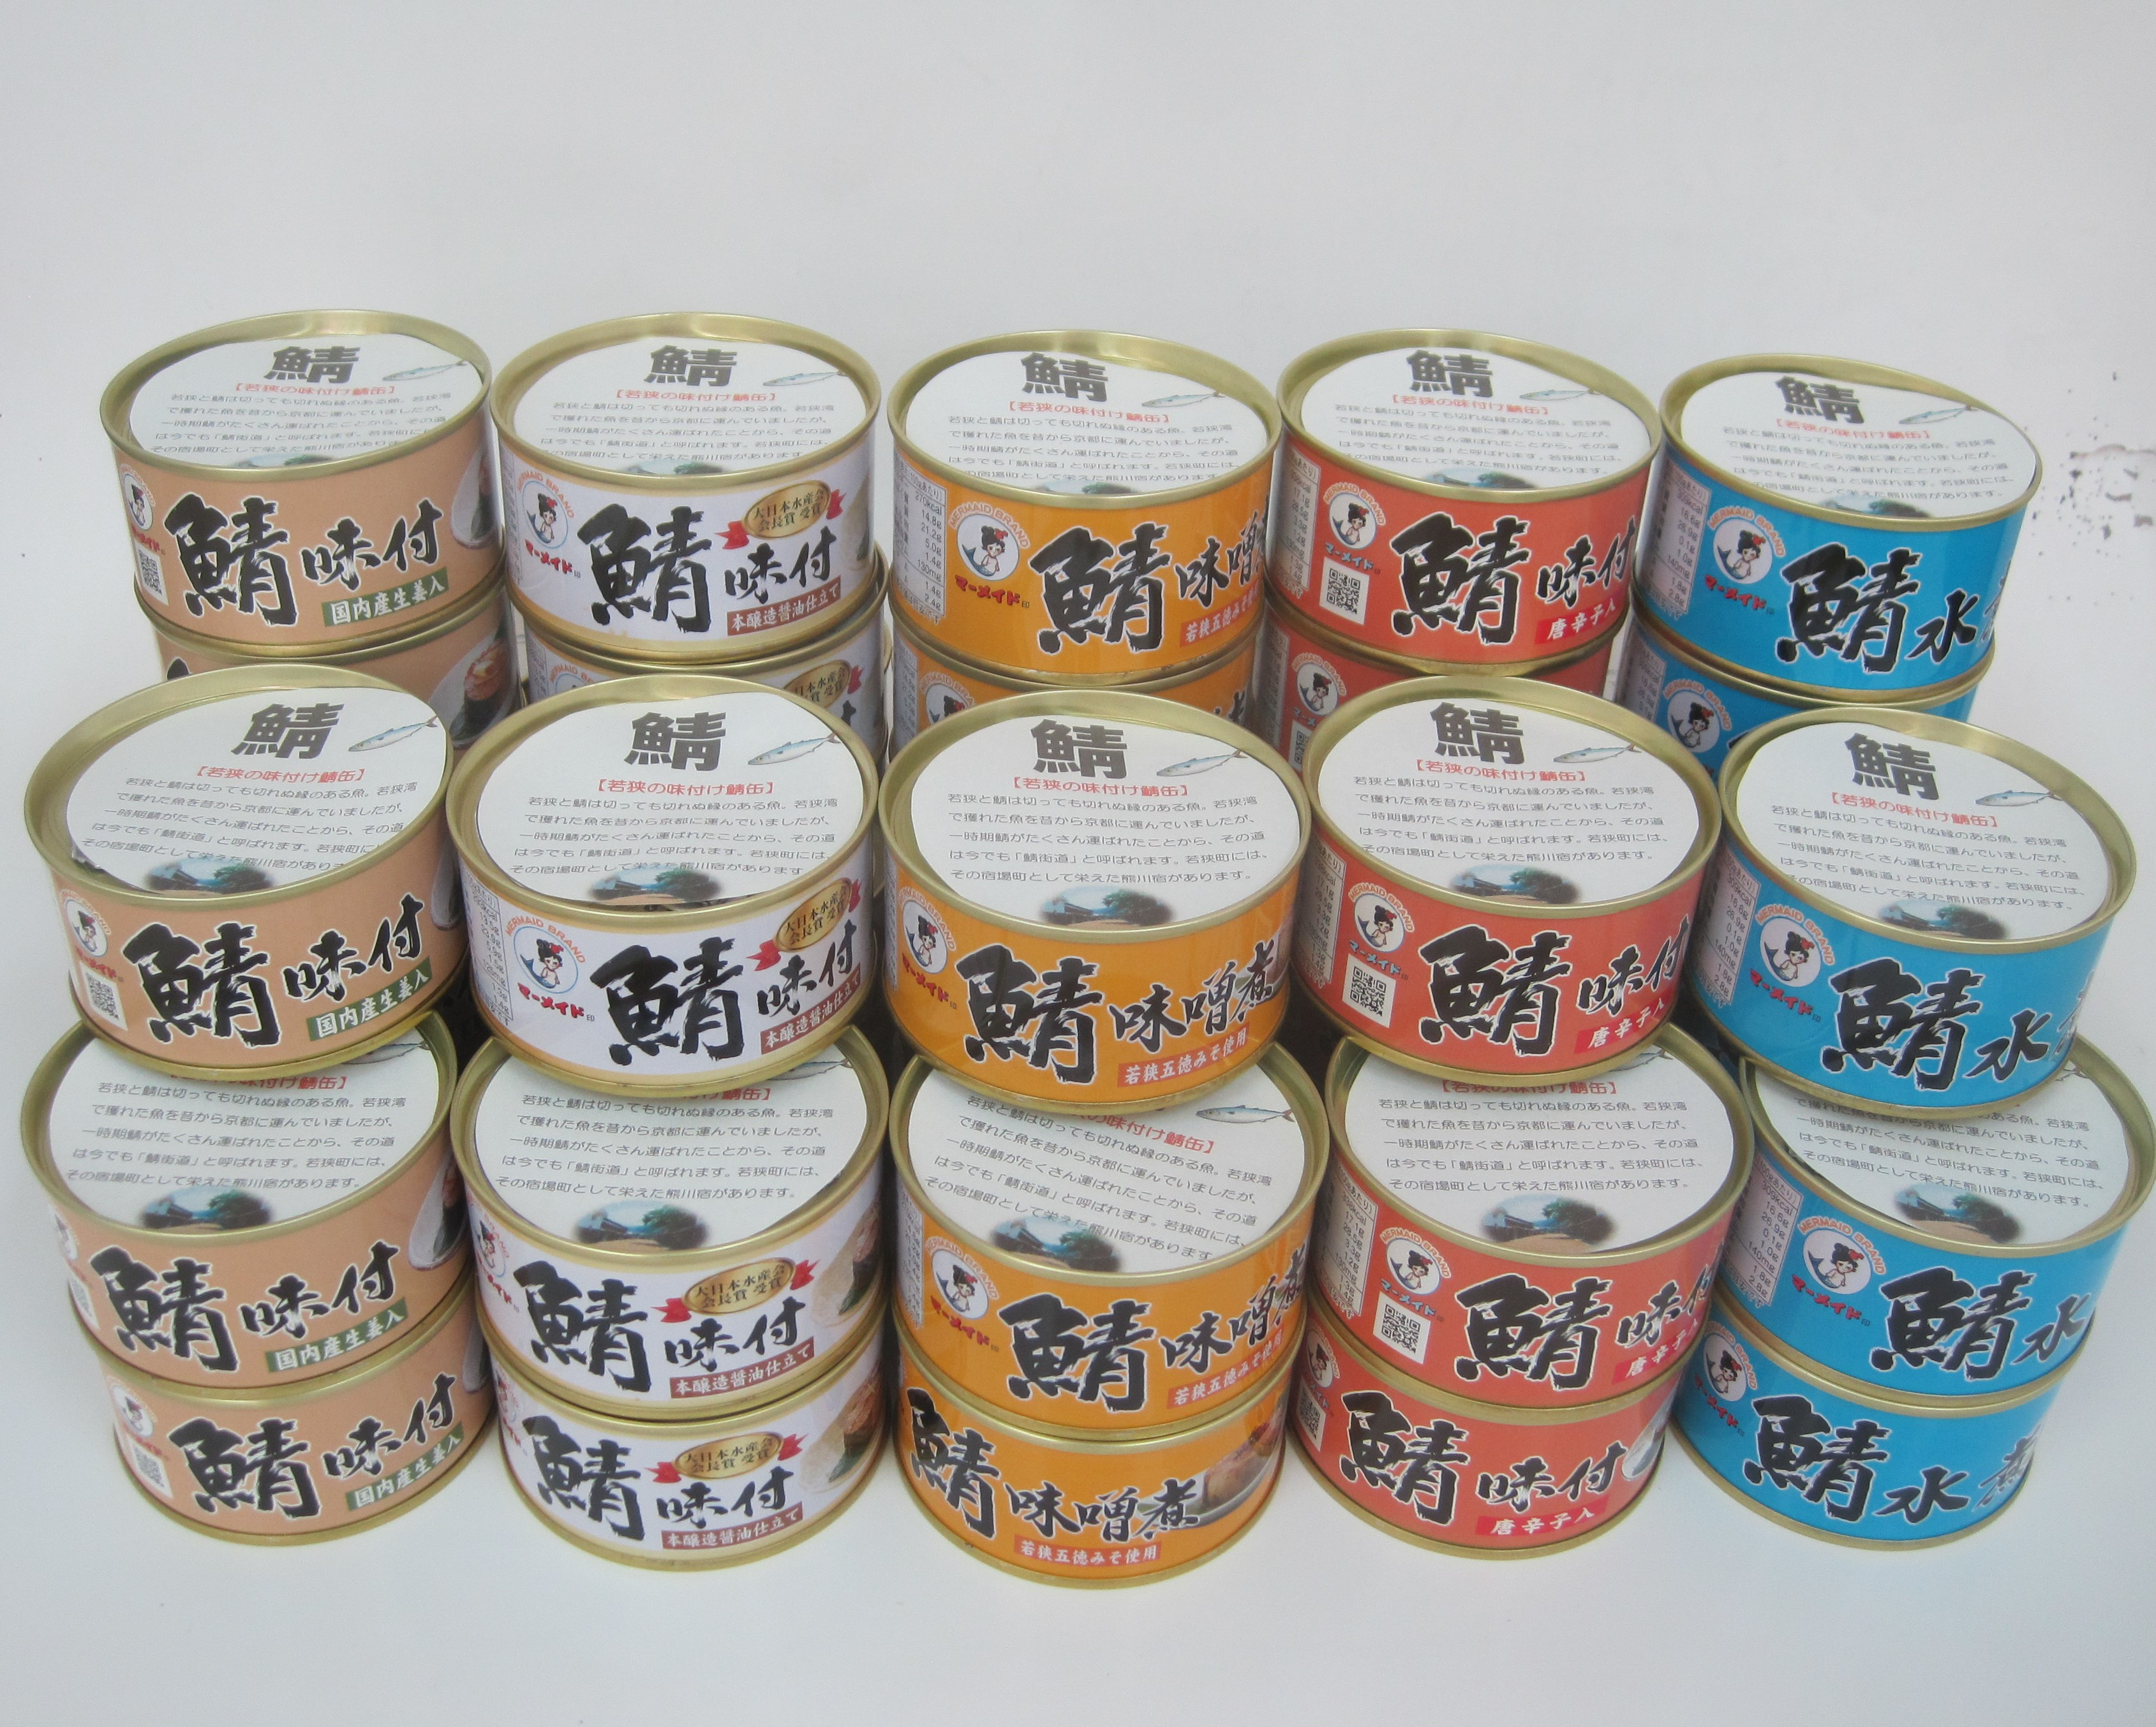 
若狭の鯖缶5種食べ比べ45缶セット(味噌煮、しょうゆ、生姜入り、唐辛子入り、水煮)
